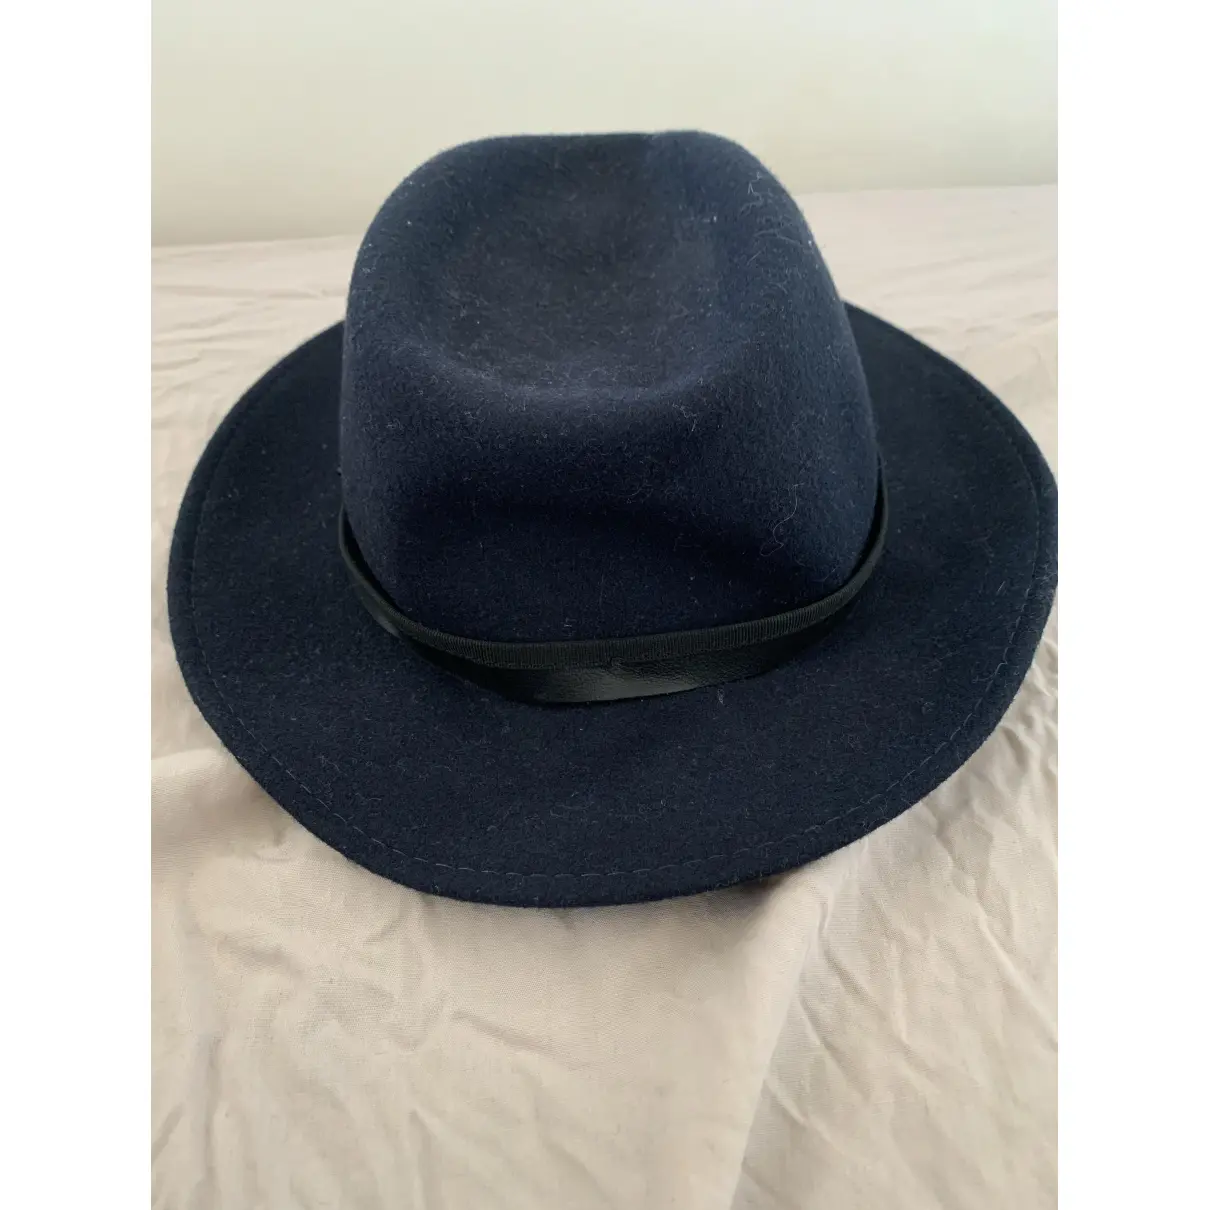 Buy The Kooples Wool hat online